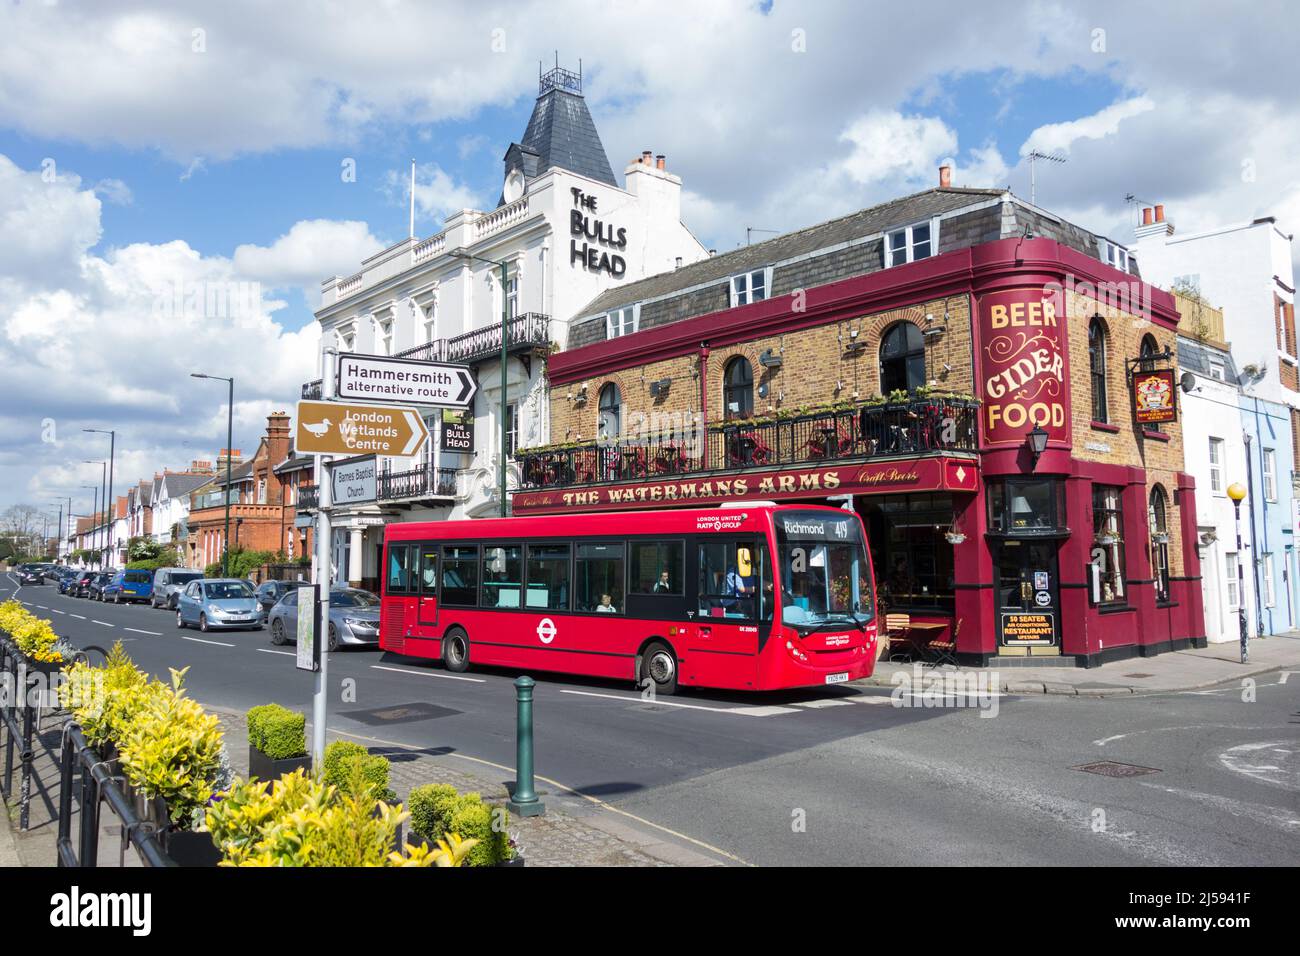 Los pubs Waterman's Arms y Bull's Head en Lonsdale Road, Barnes, Londres, SW13, Reino Unido Foto de stock